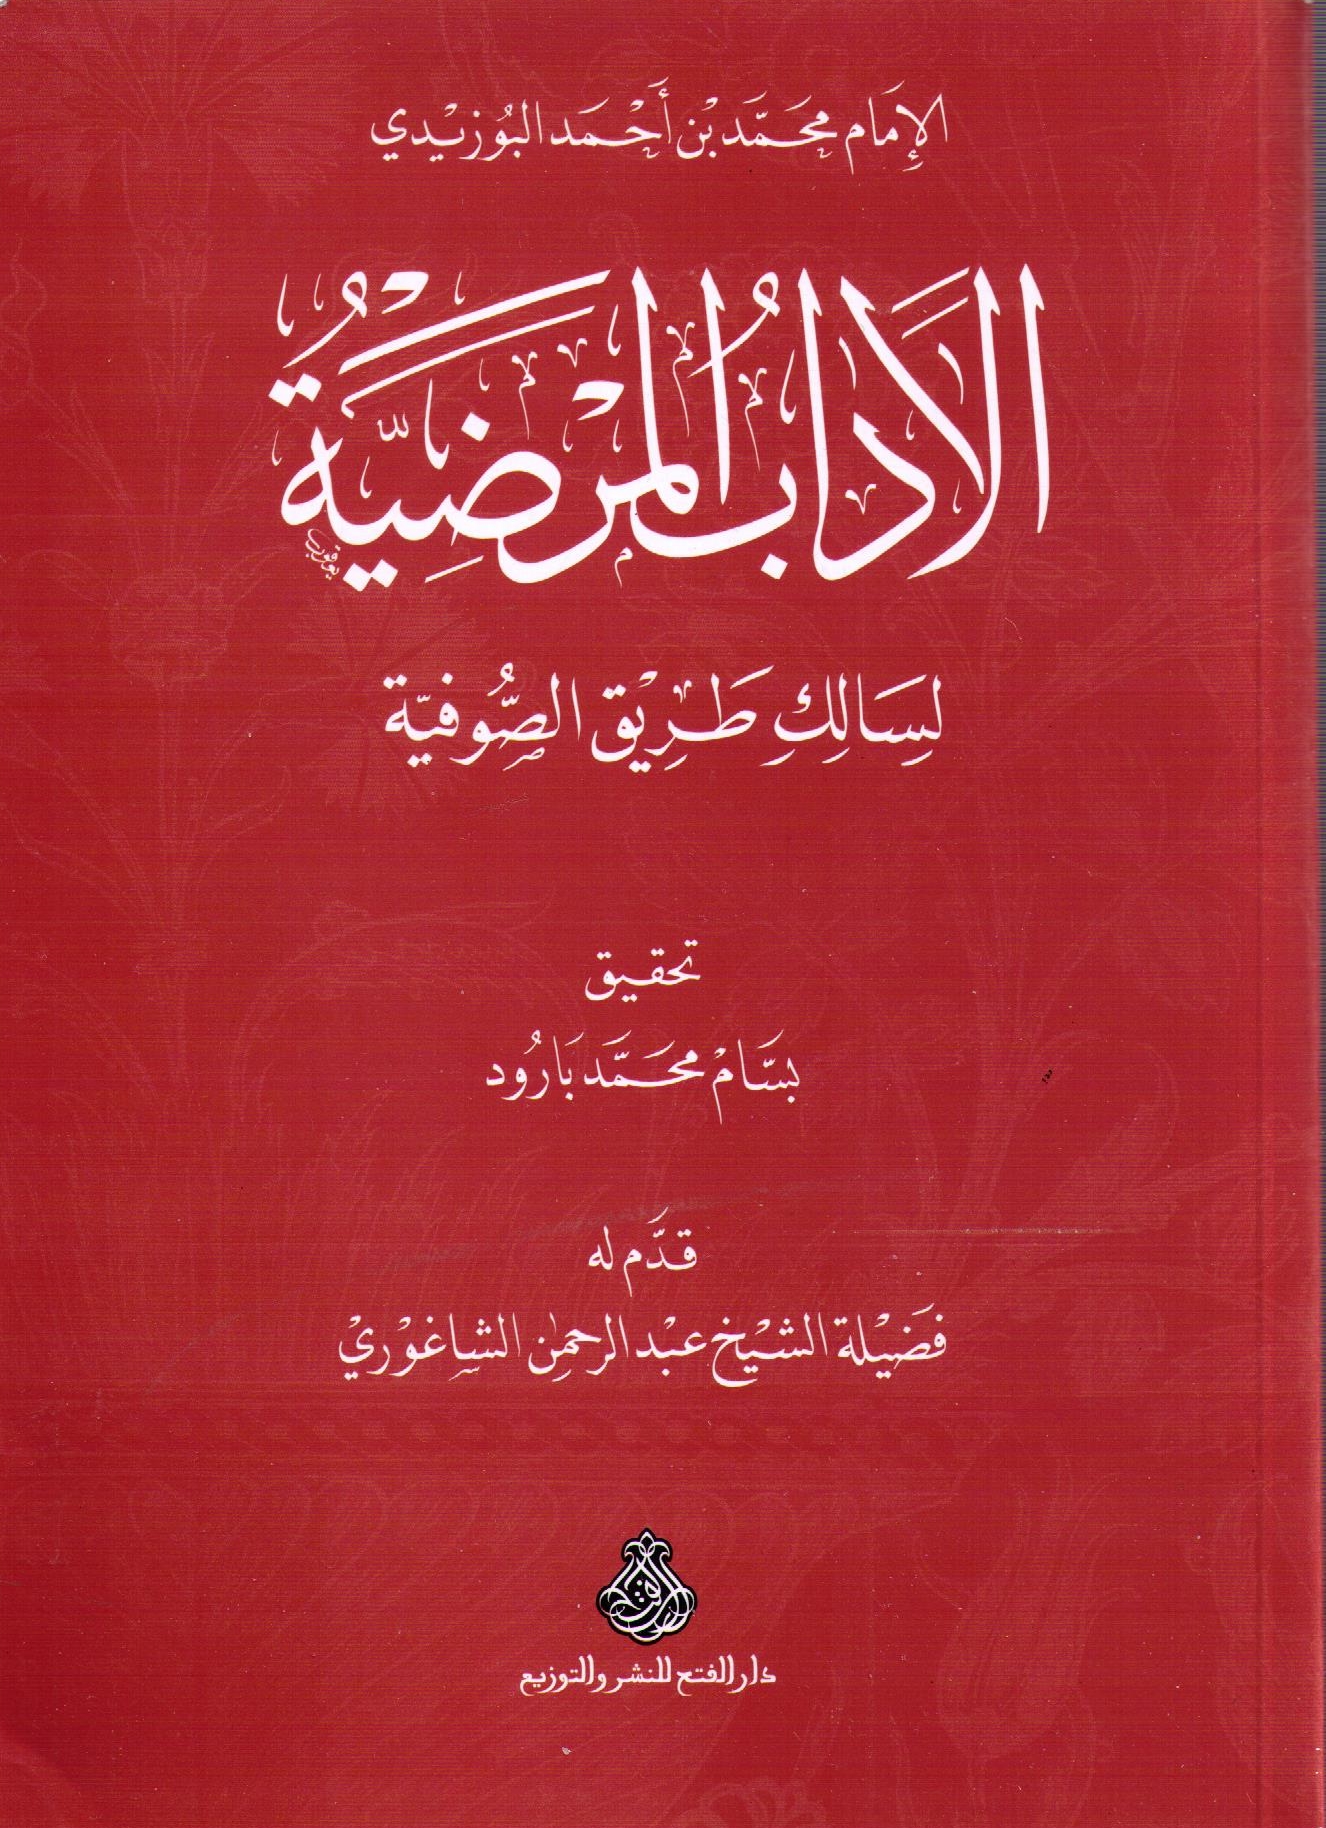 Book | Buzidi: Al-Adab al-Mardiyya - الآداب المرضية للإمام البوزيدي